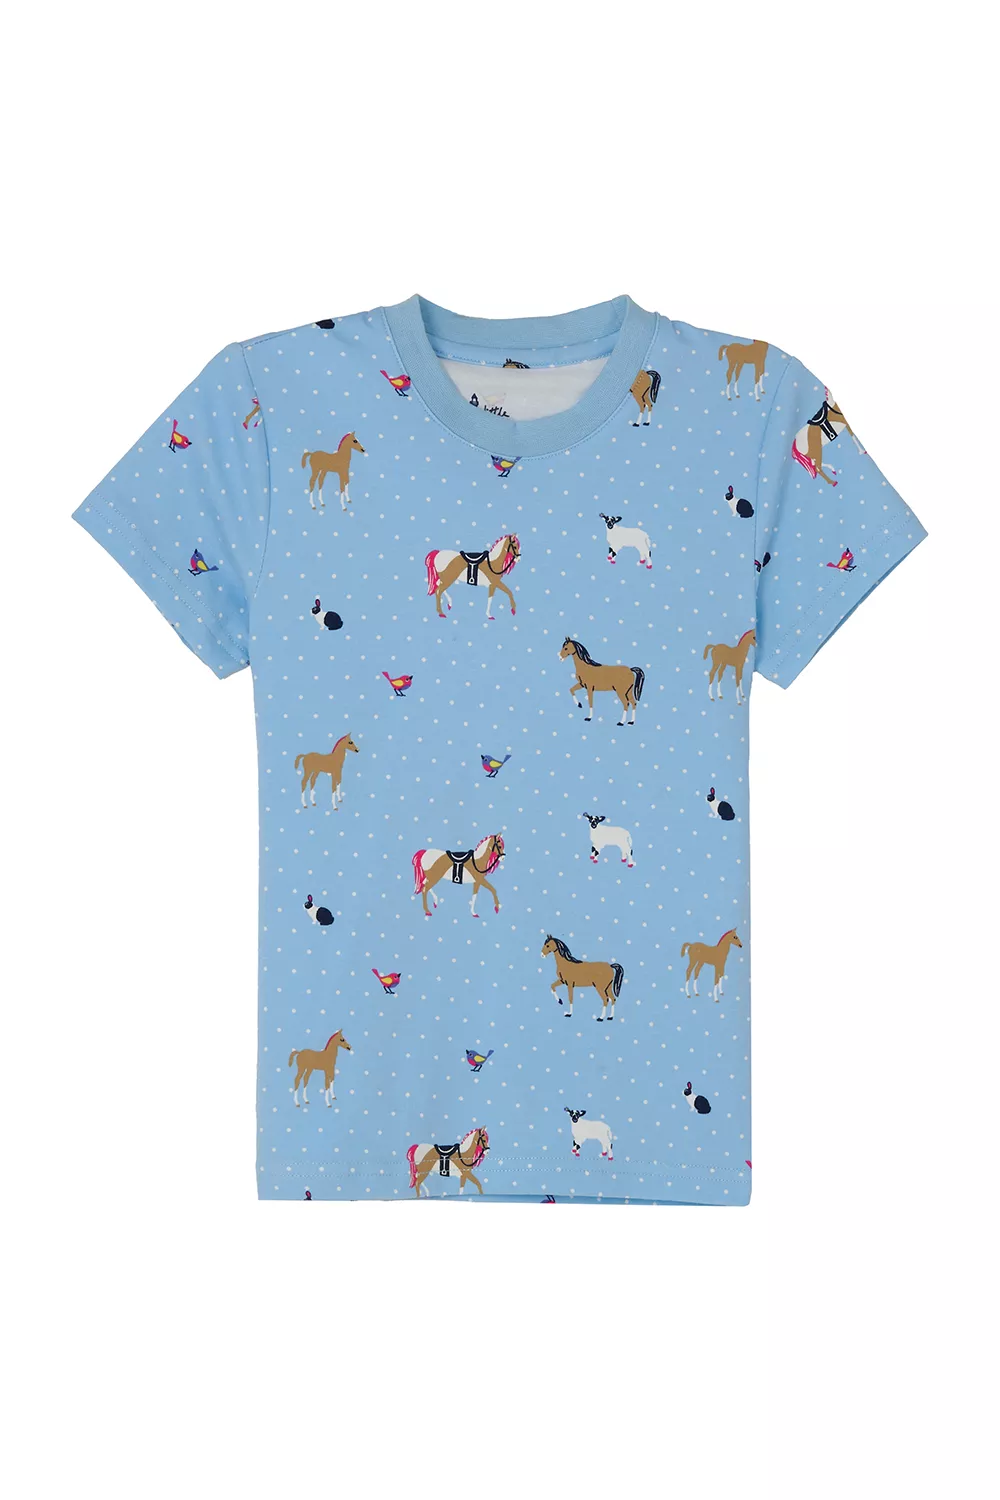 Girls Pyjamas Blue Animal Print 5-6yrs